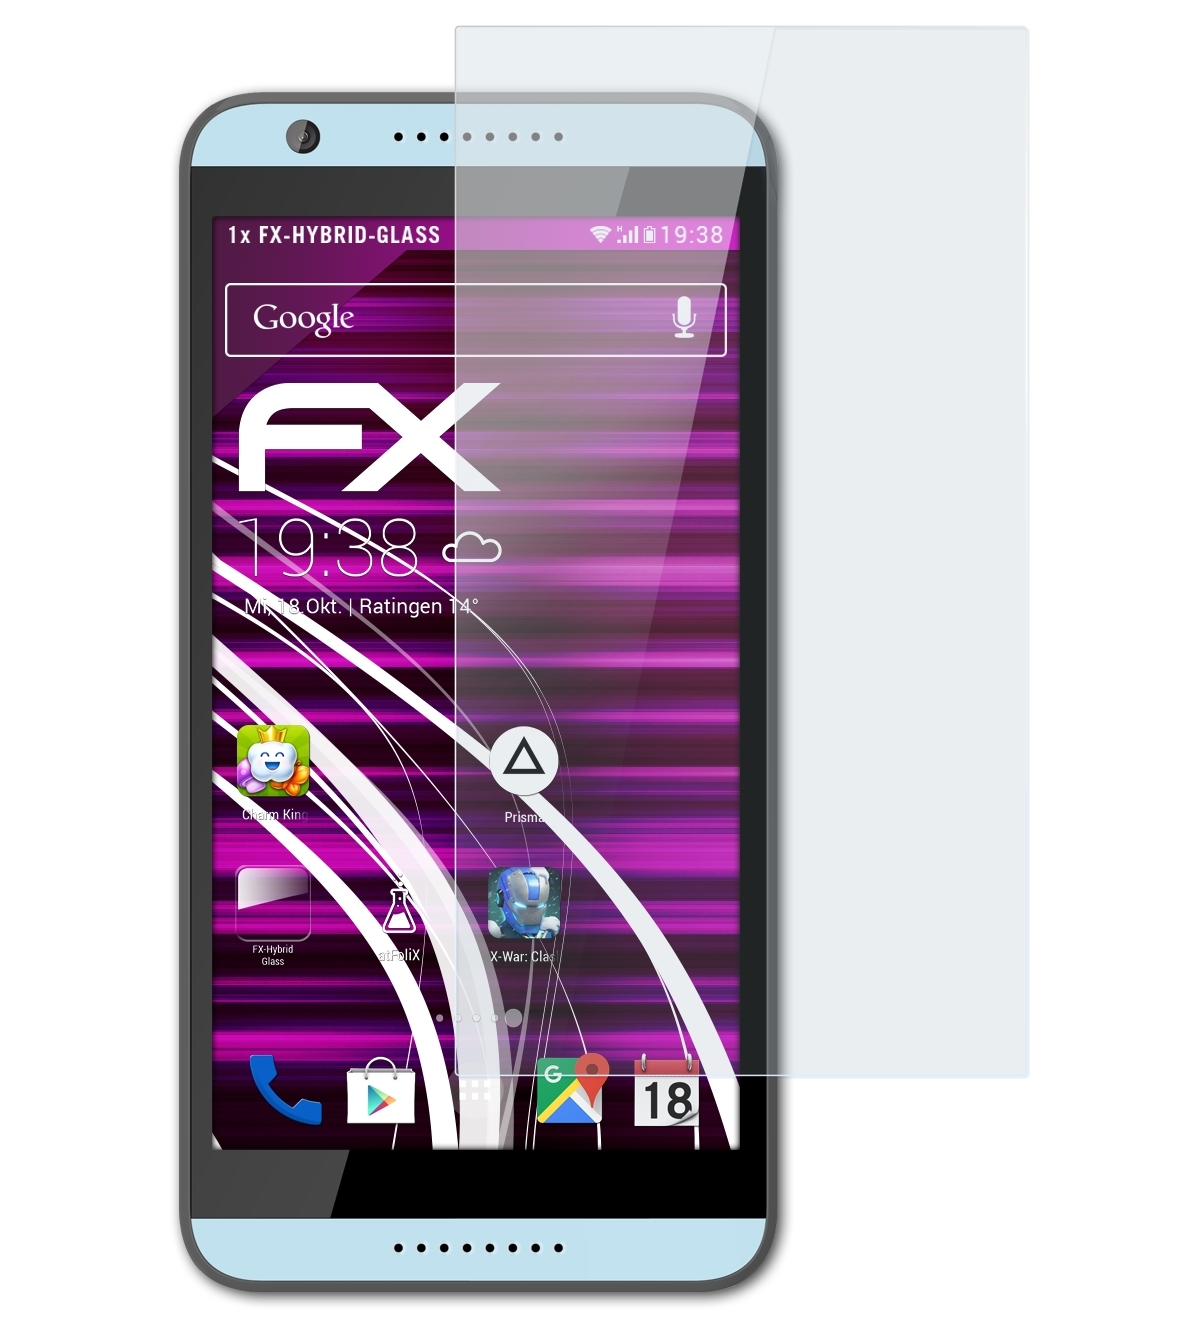 ATFOLIX Schutzglas(für 820G+) HTC FX-Hybrid-Glass / 820 Desire